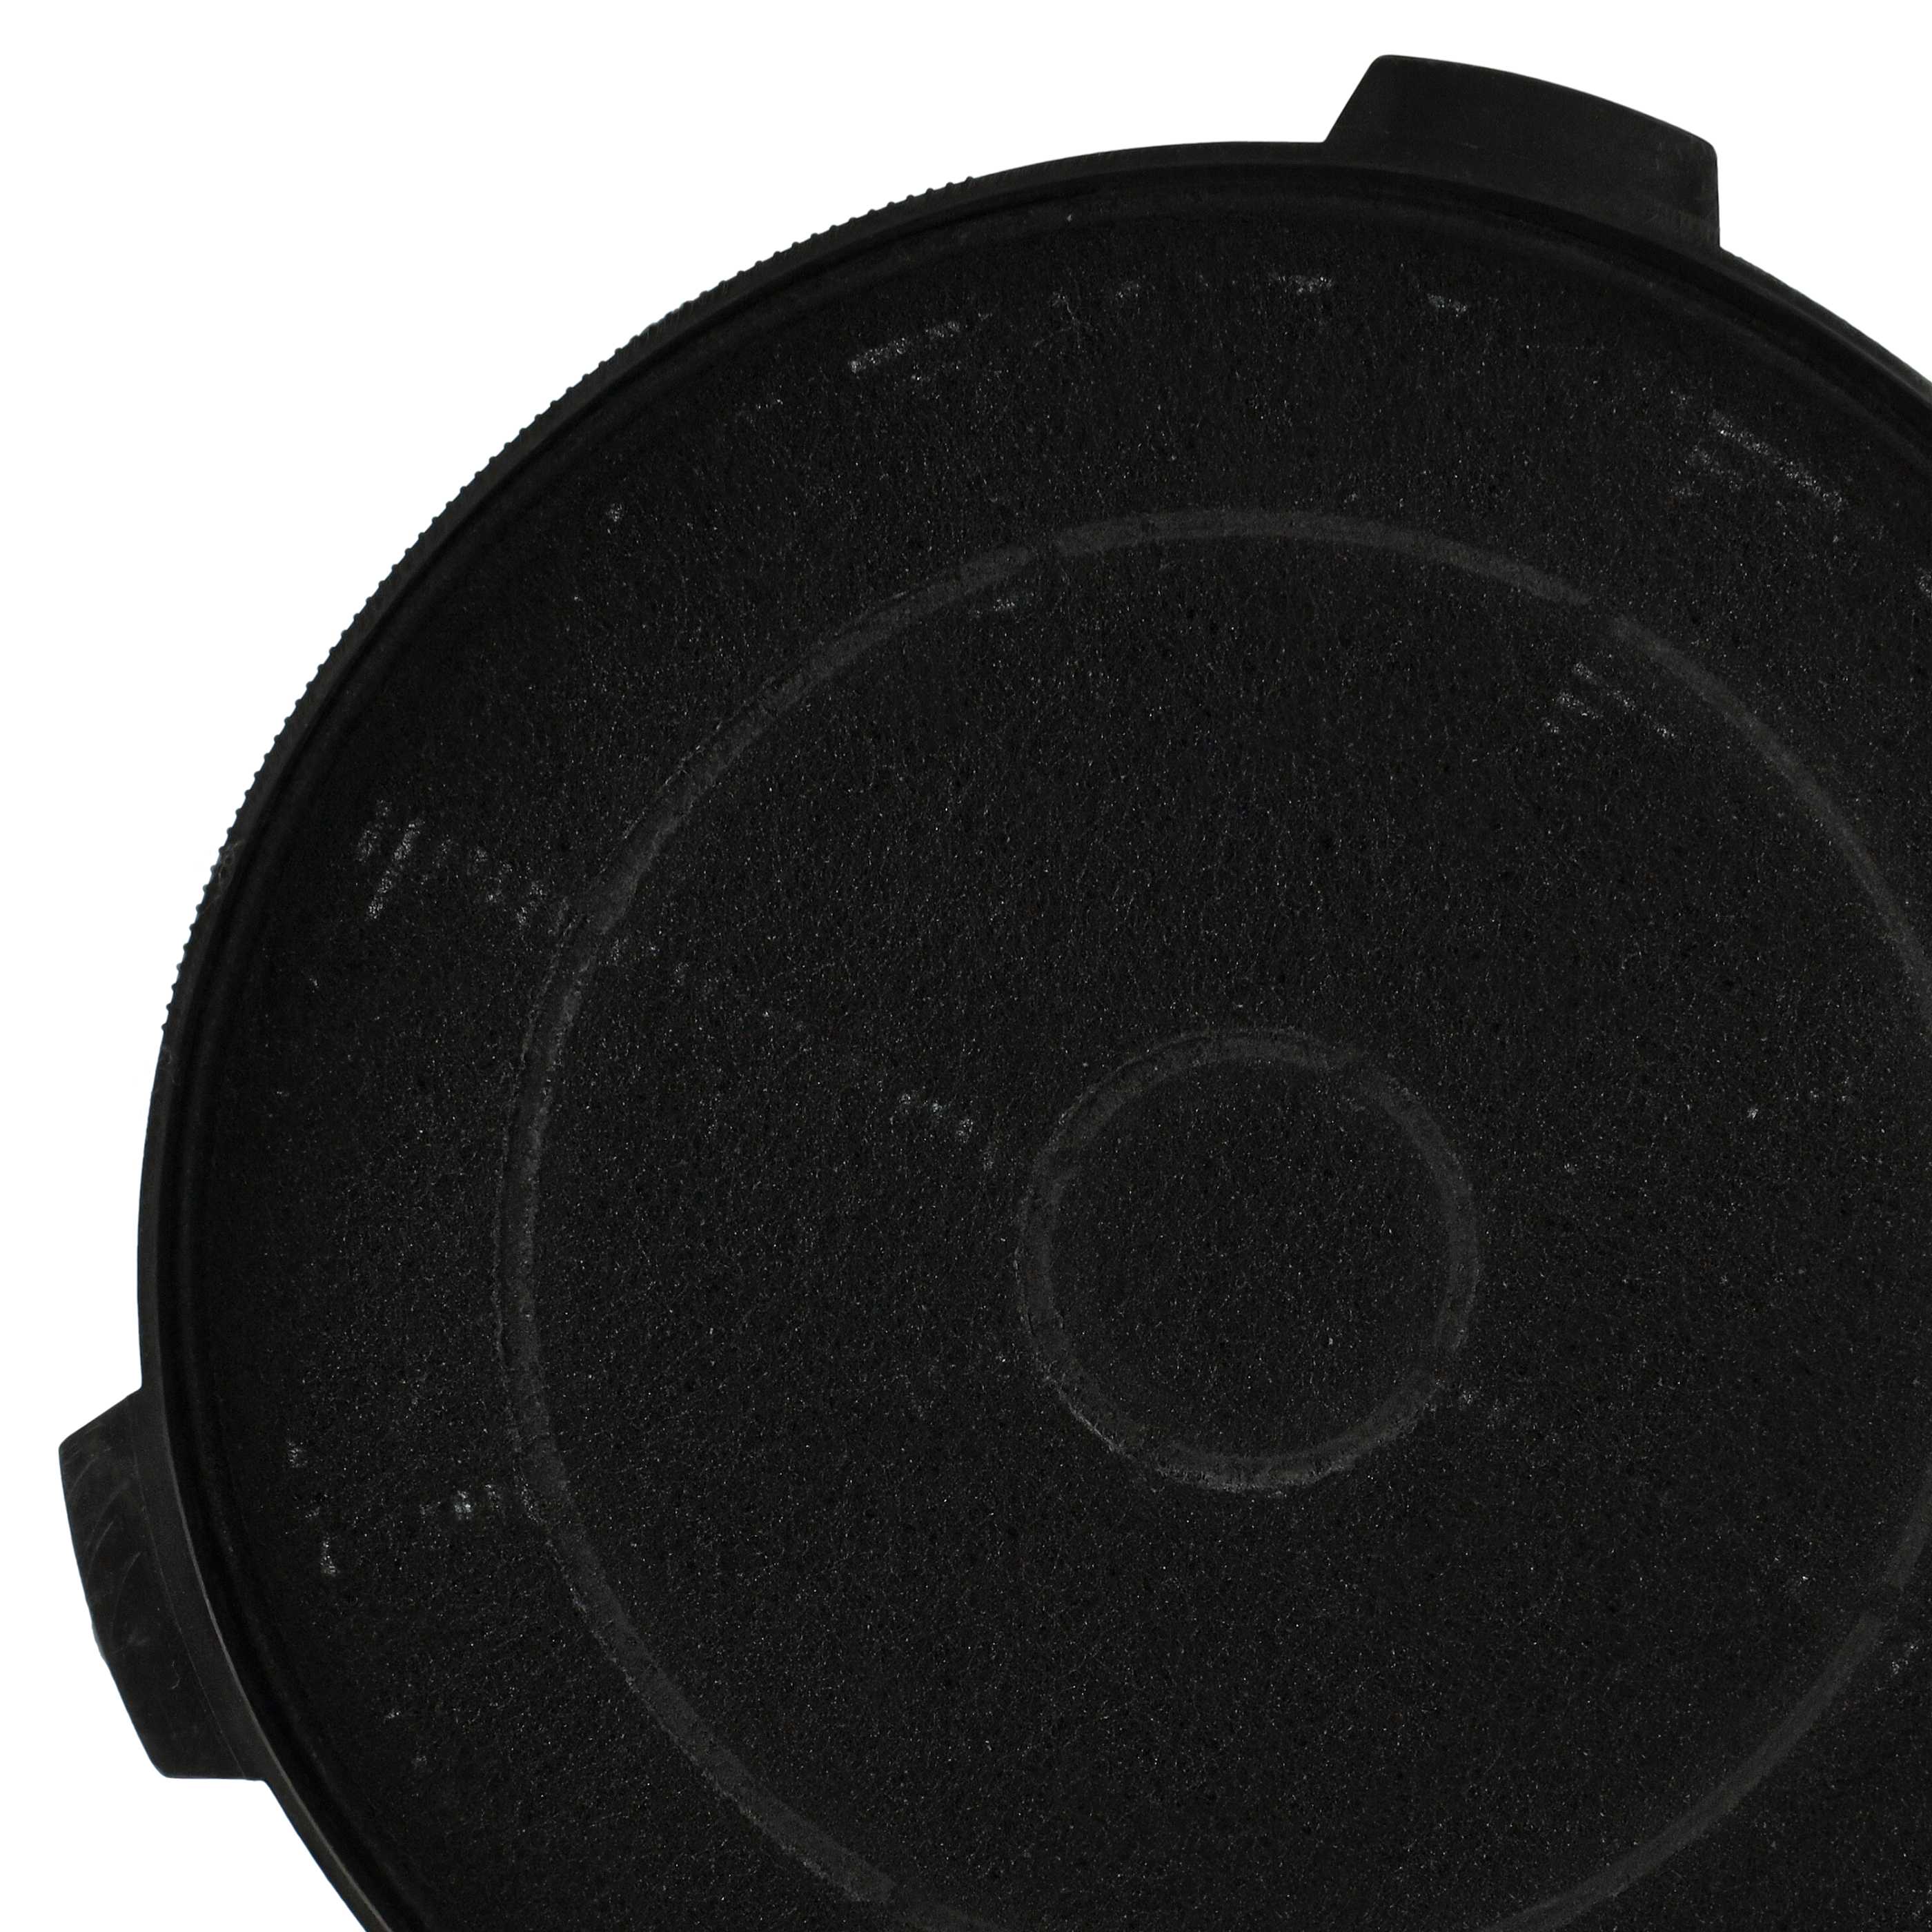 Filtro de carbón activado reemplaza Electrolux E251005 para campanas - 18,85 cm